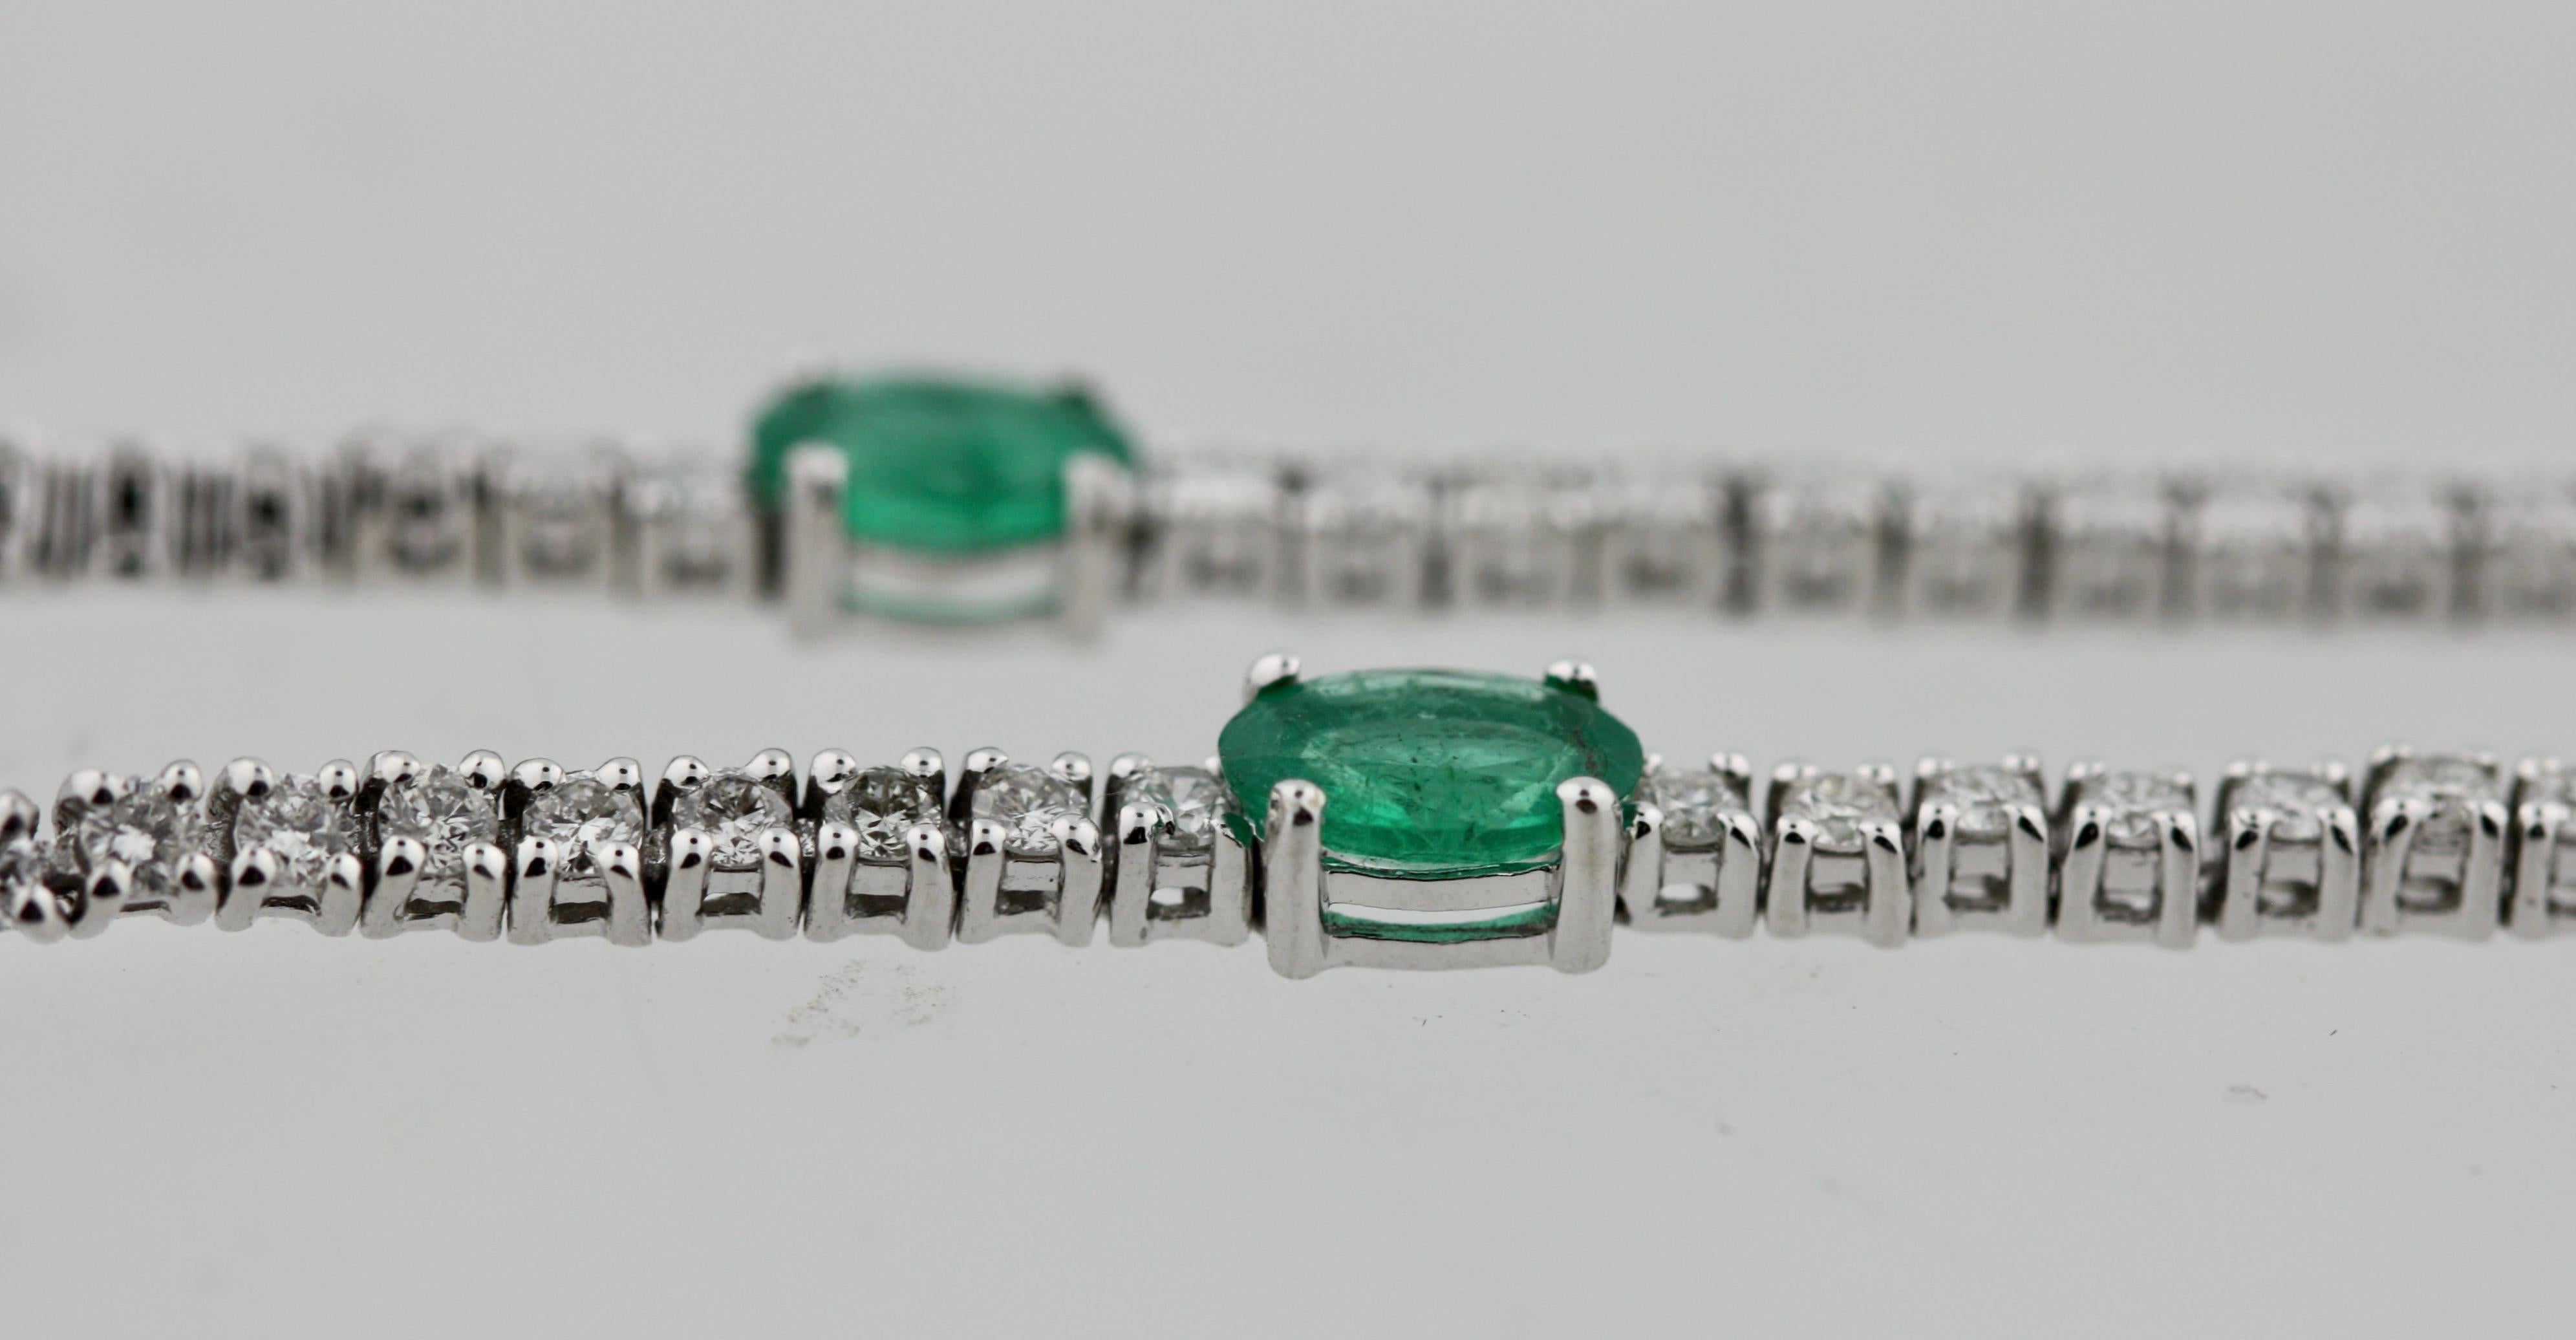 Emerald Cut Emerald and Diamond Bracelet